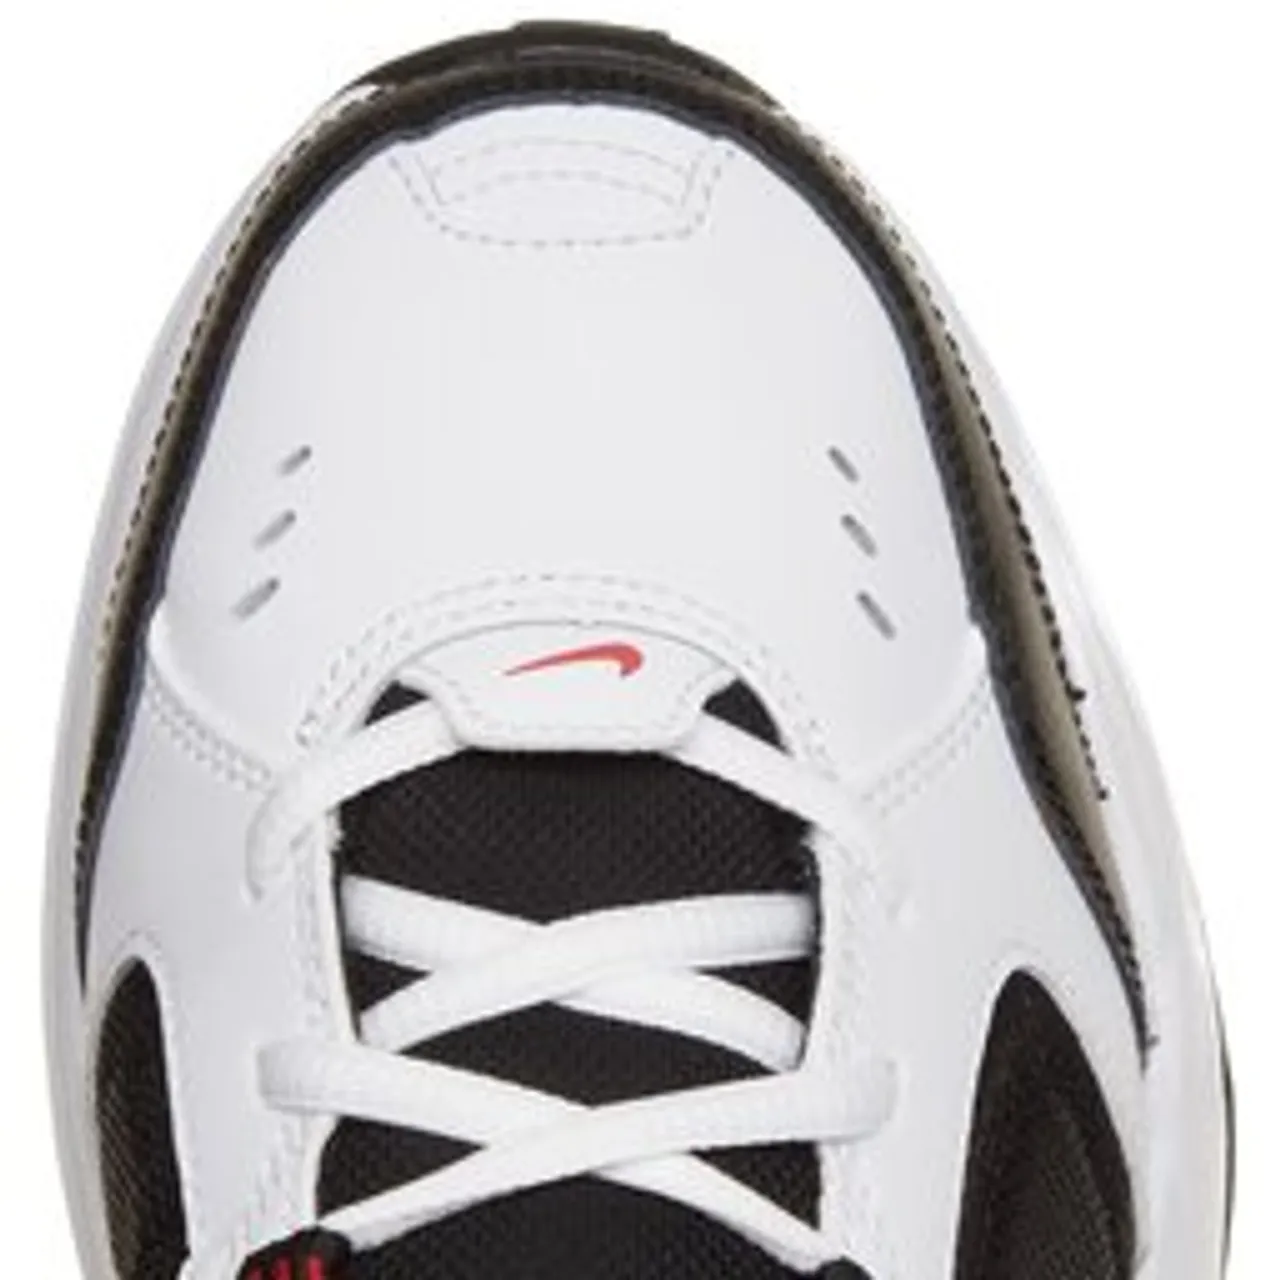 Schuhe Nike Air Monarch Iv 415445 101 White/Black